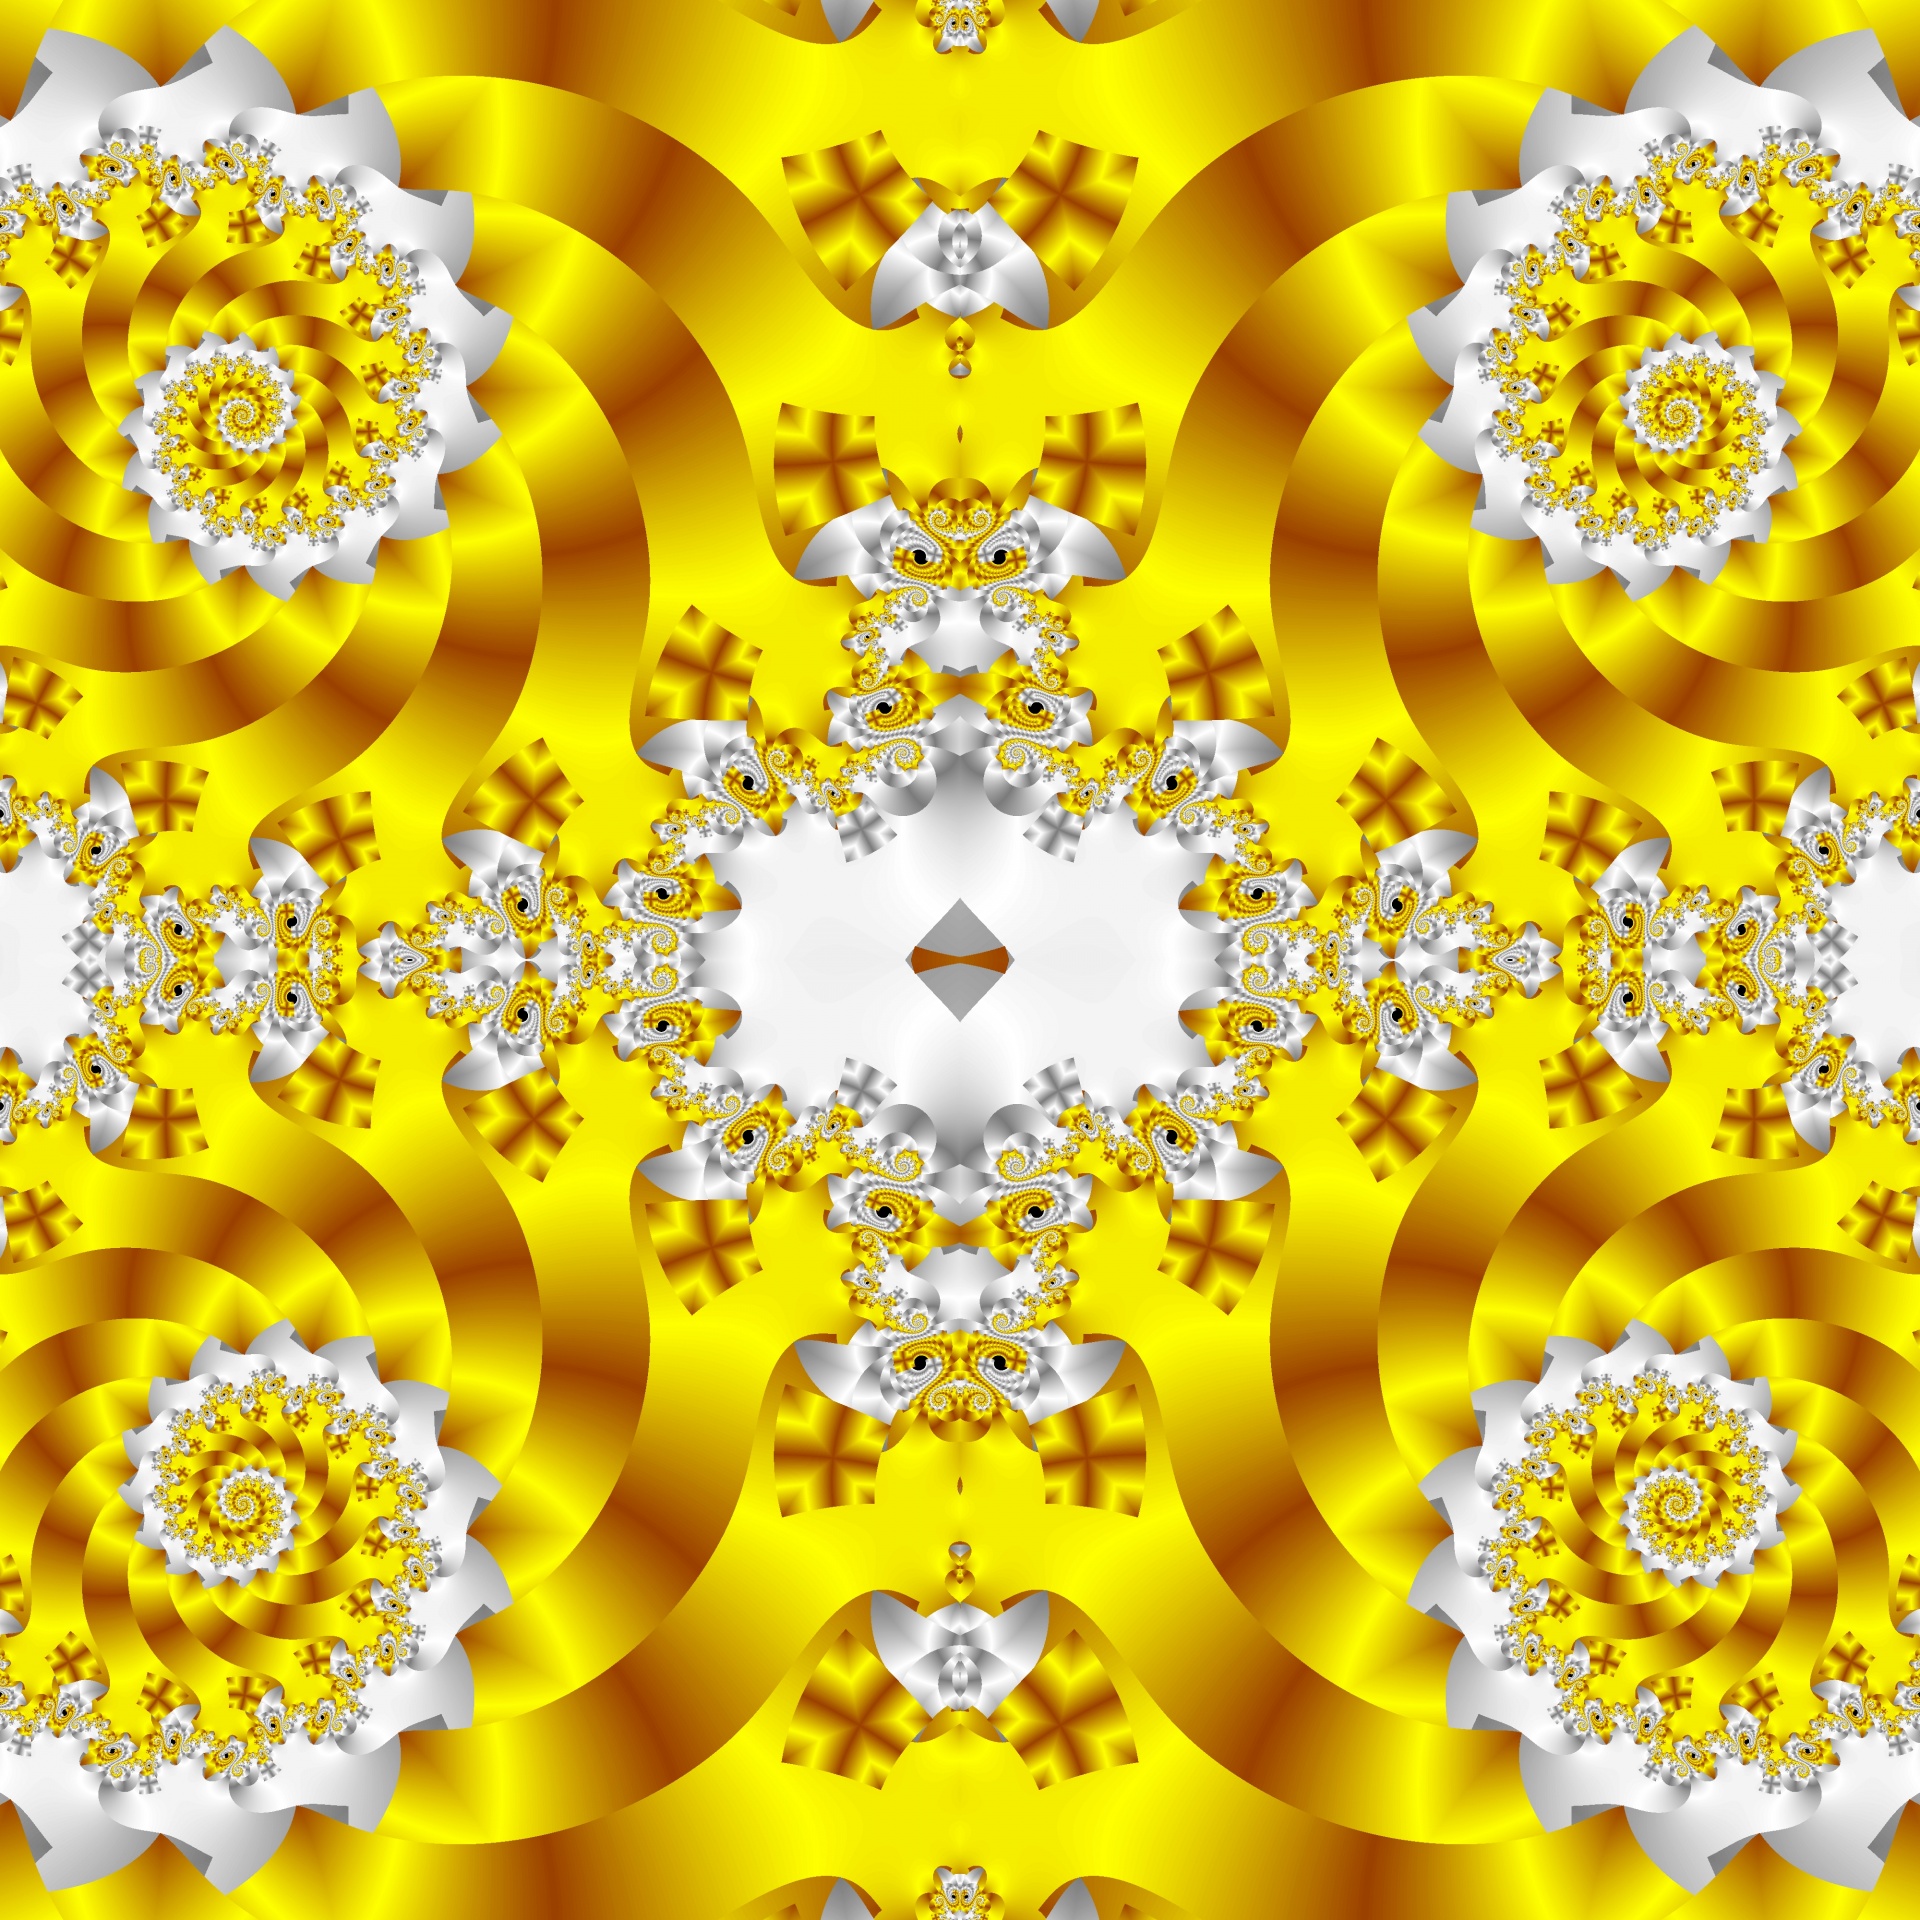 Symmetric Spiral